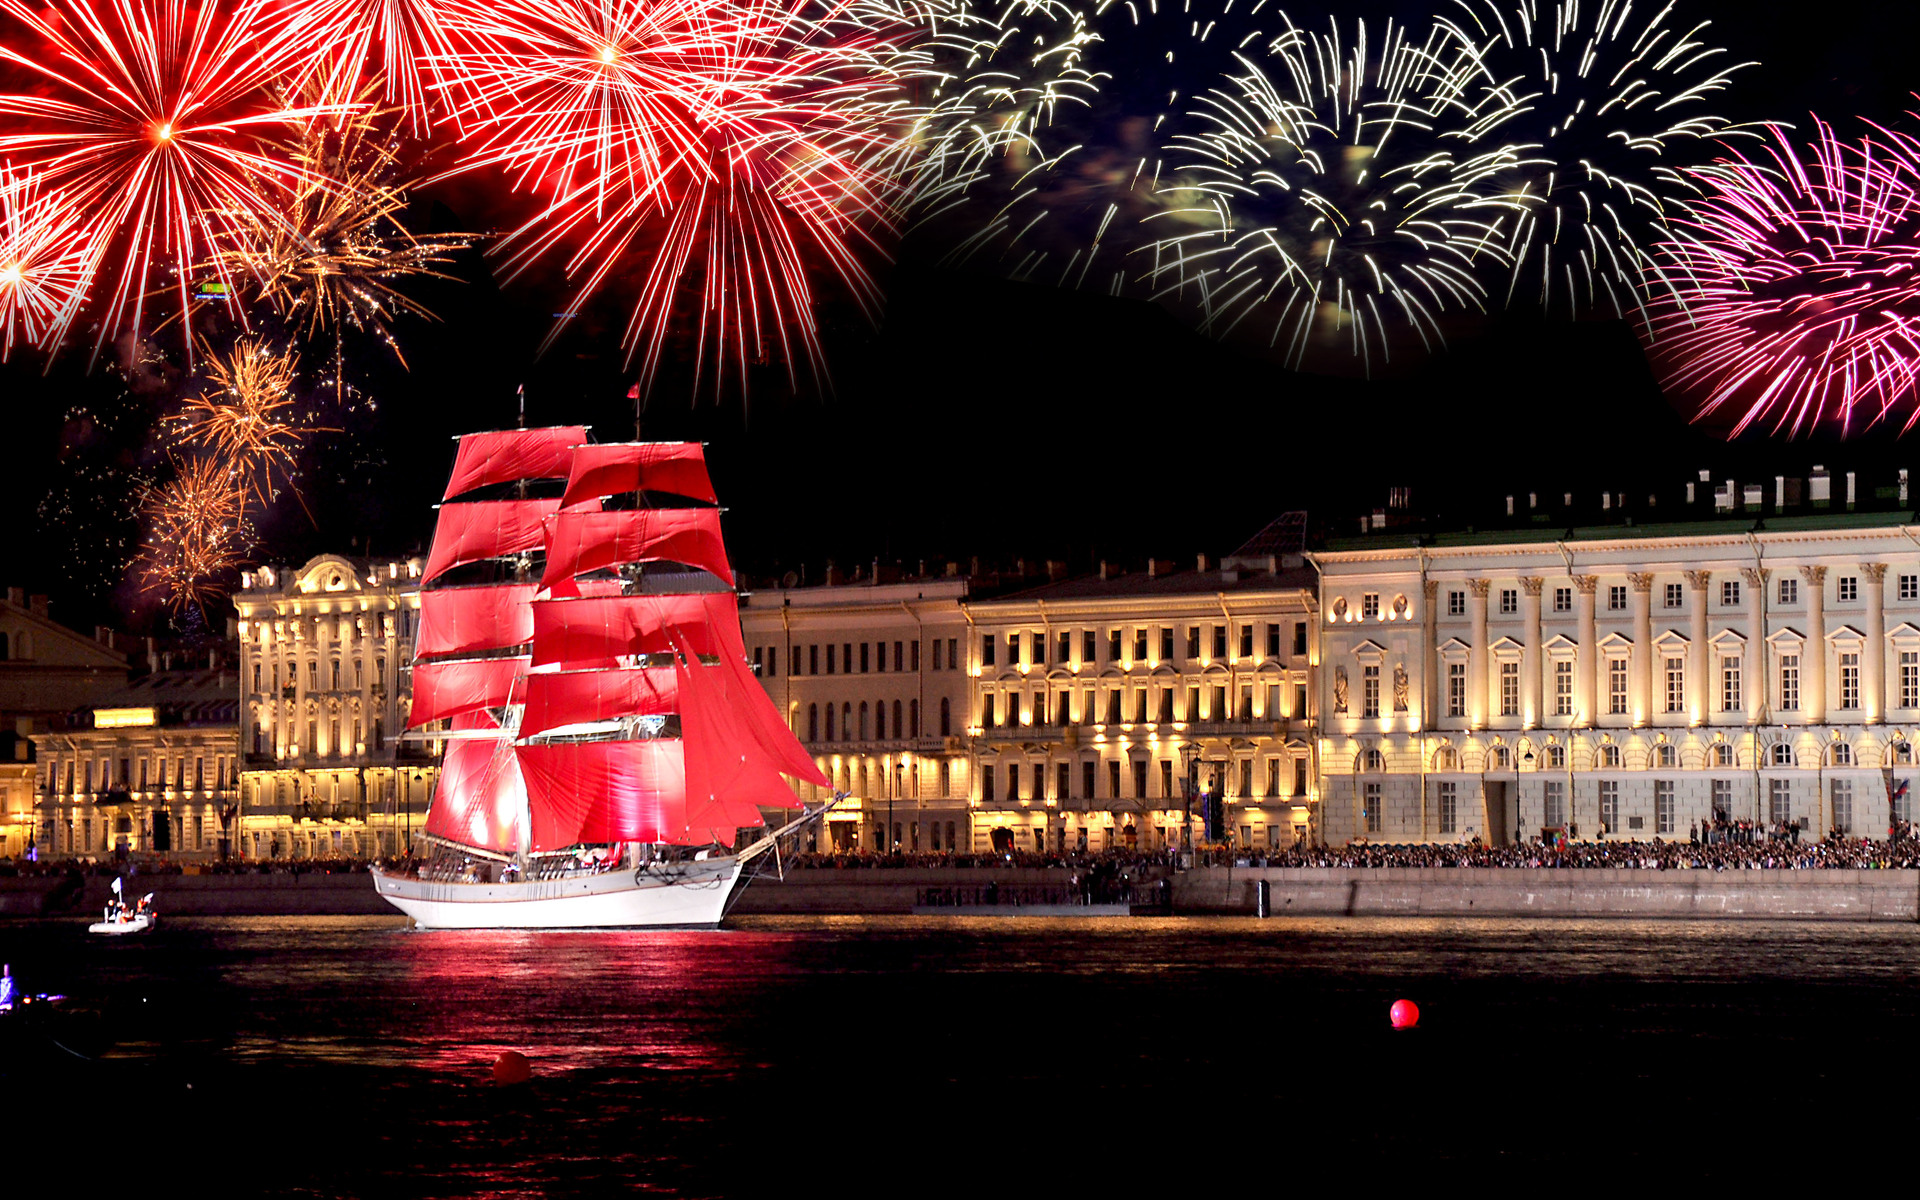 photography, fireworks, celebration, ship